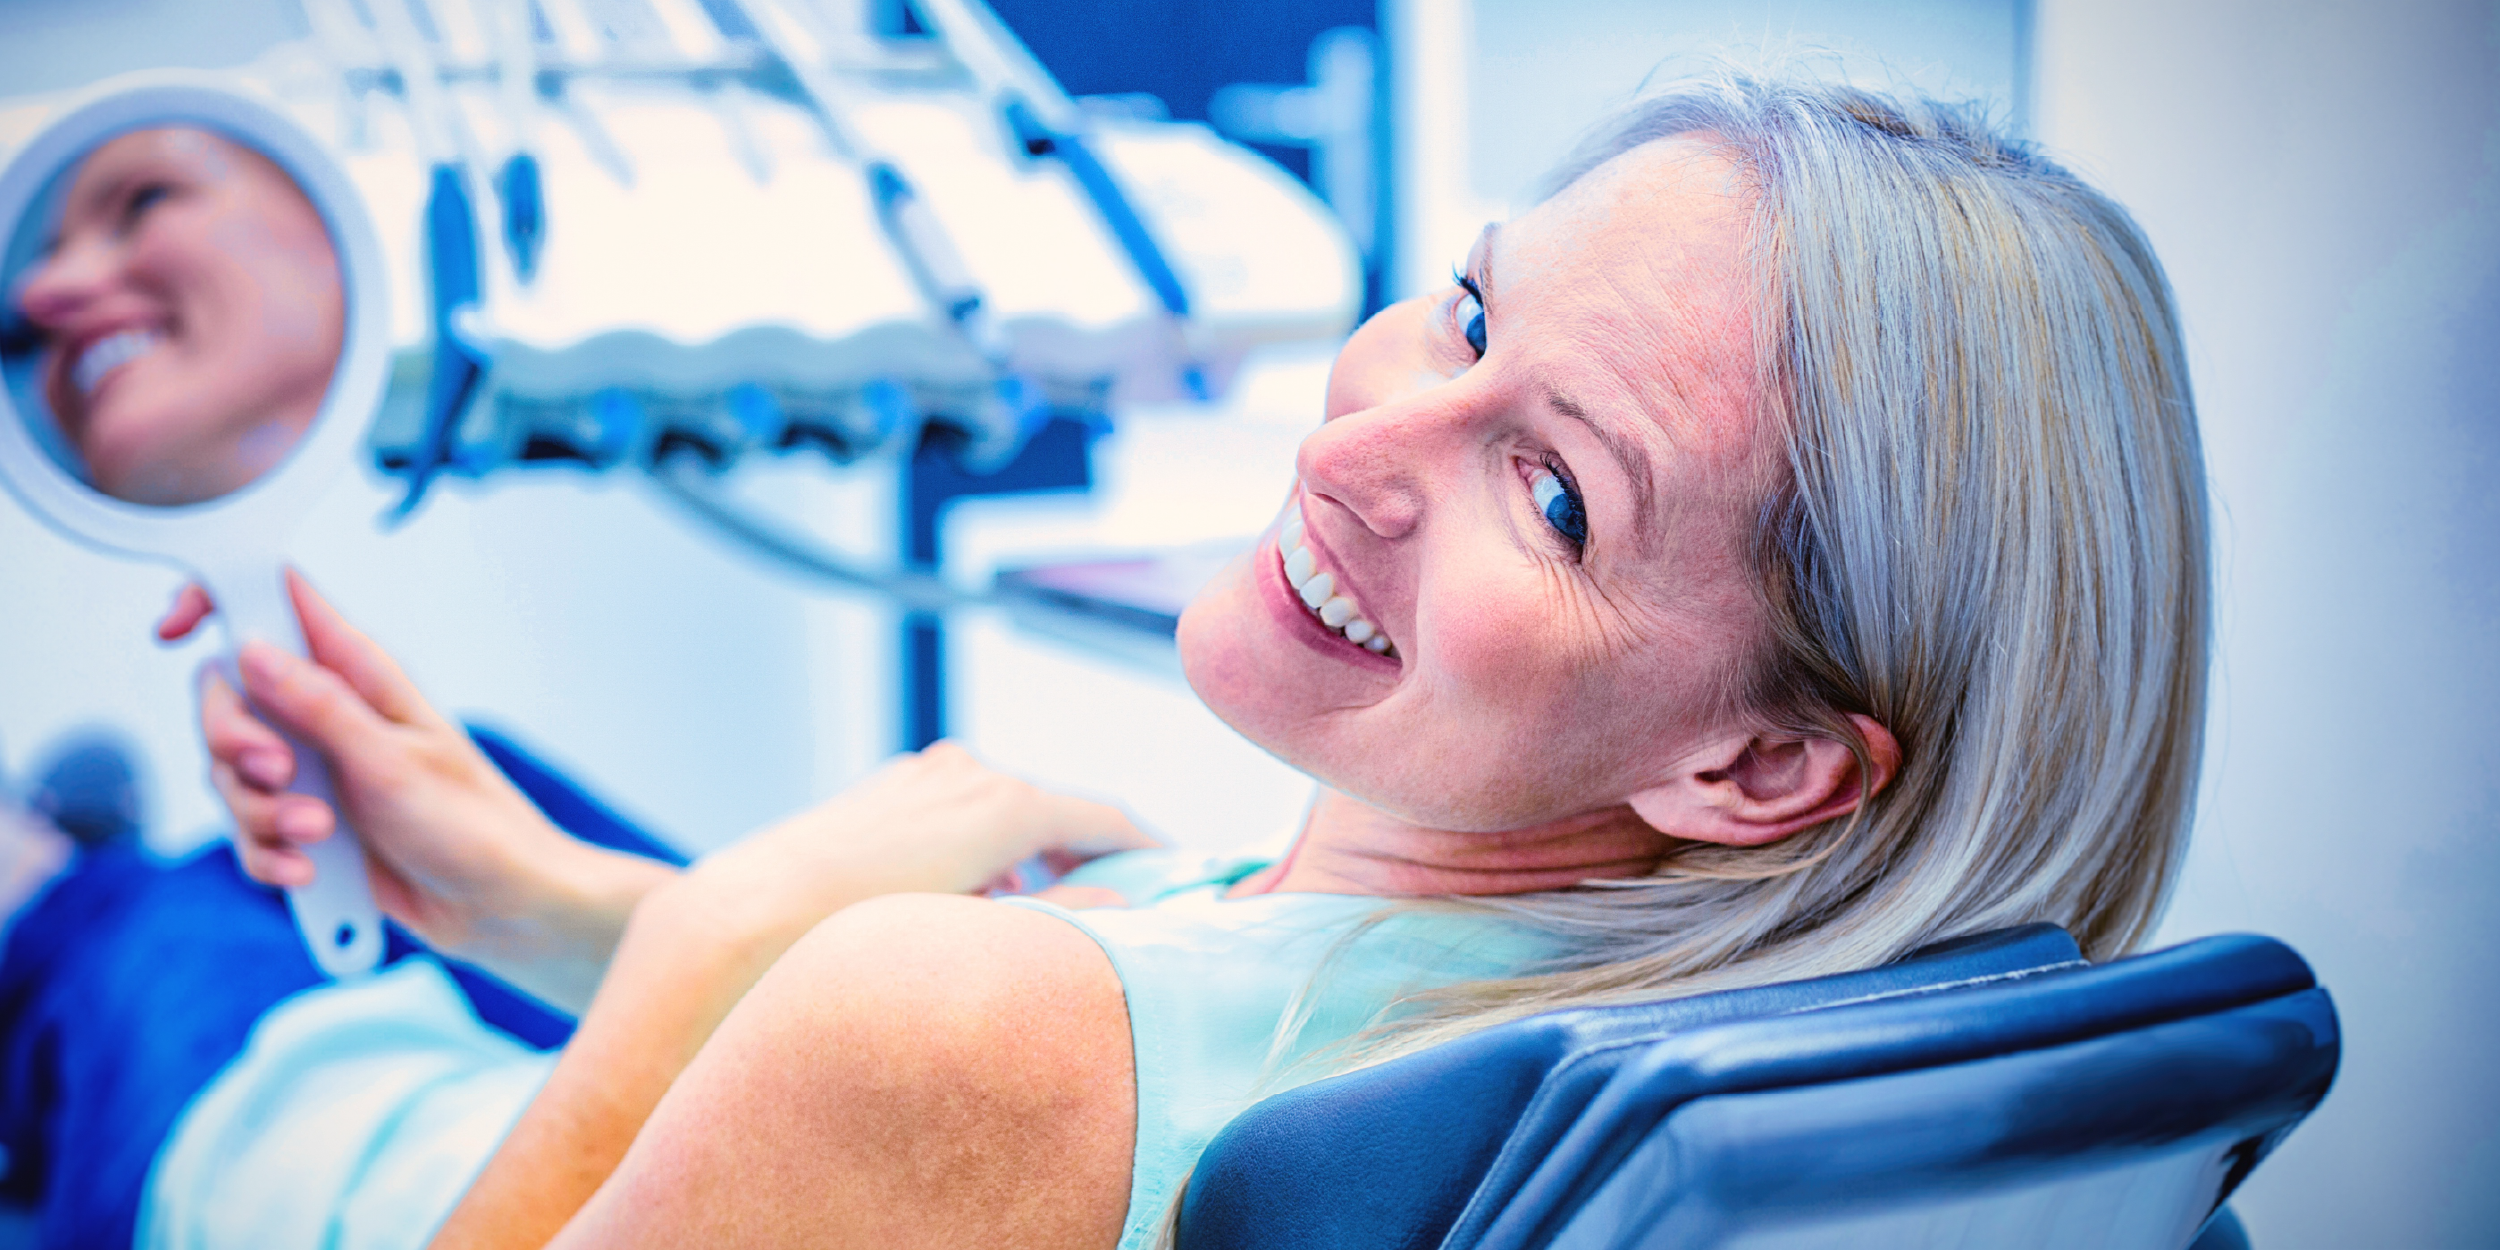 Imagem de uma mulher com um lindo sorriso após realizar um implante dentário.